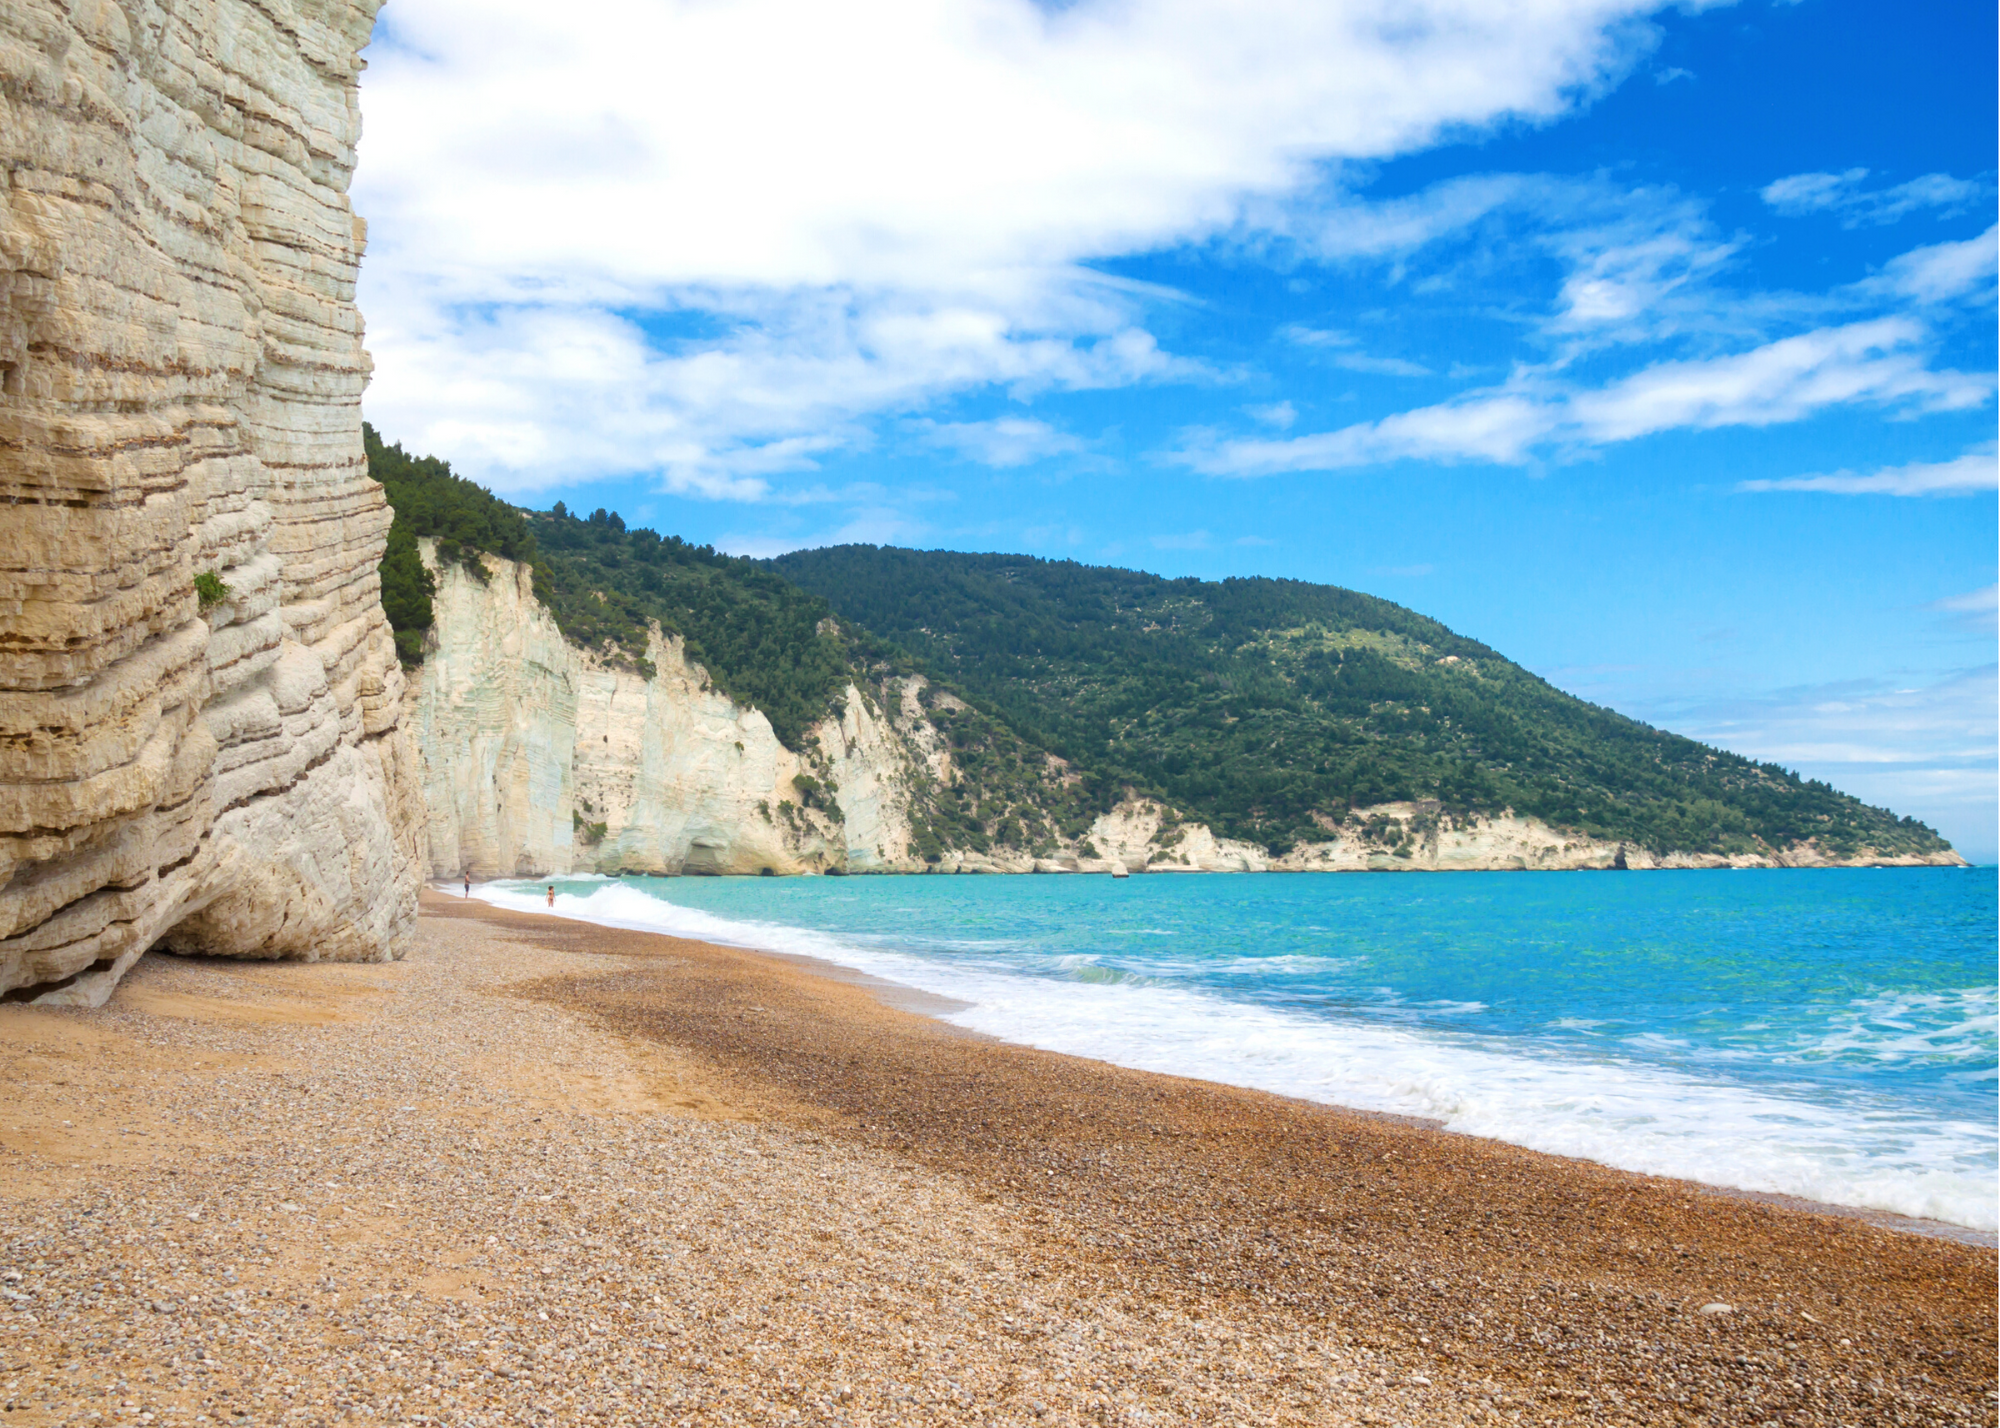 Adotta una spiaggia – Puglia